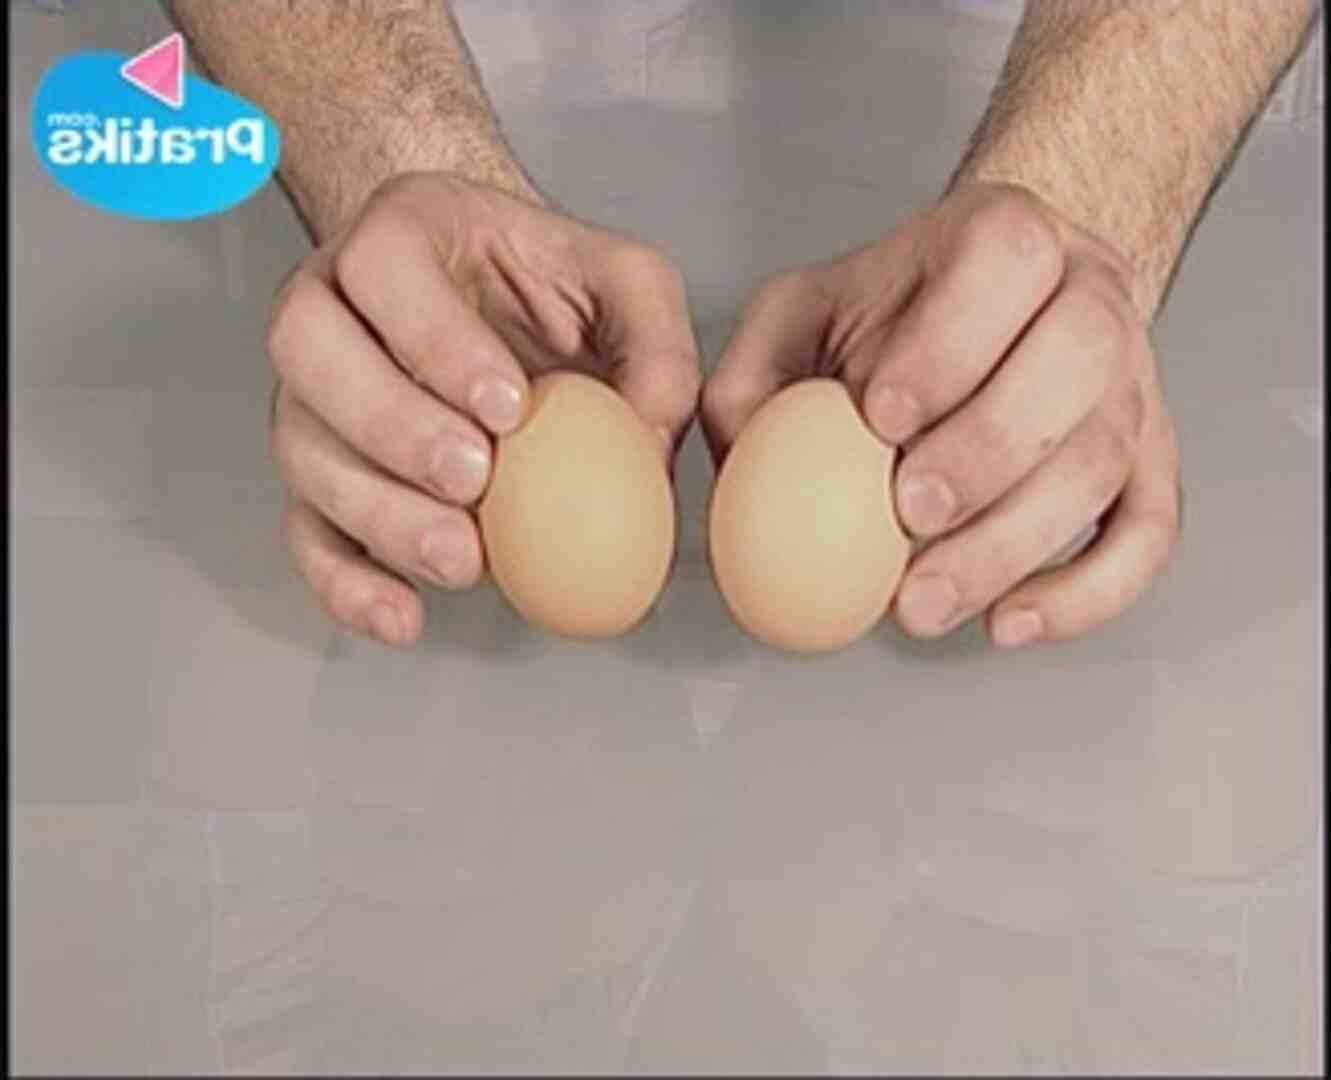 Comment sont conservés les œufs durs ?